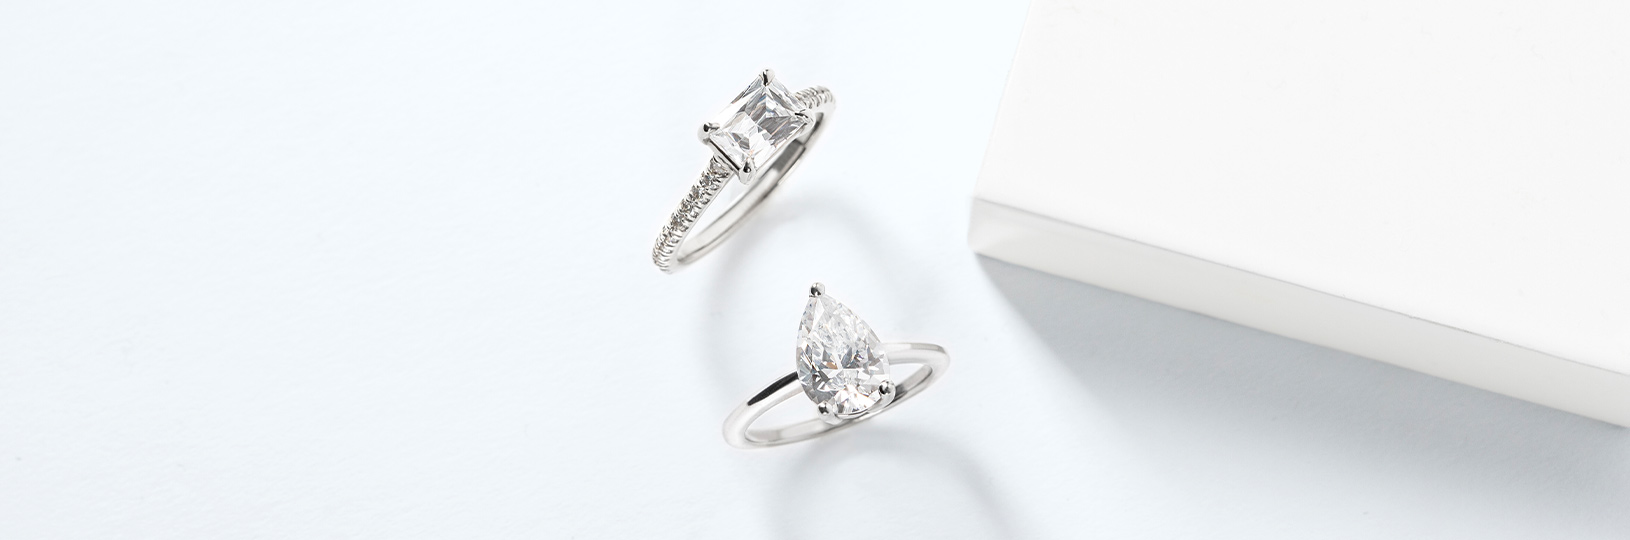 Platinum engagement rings